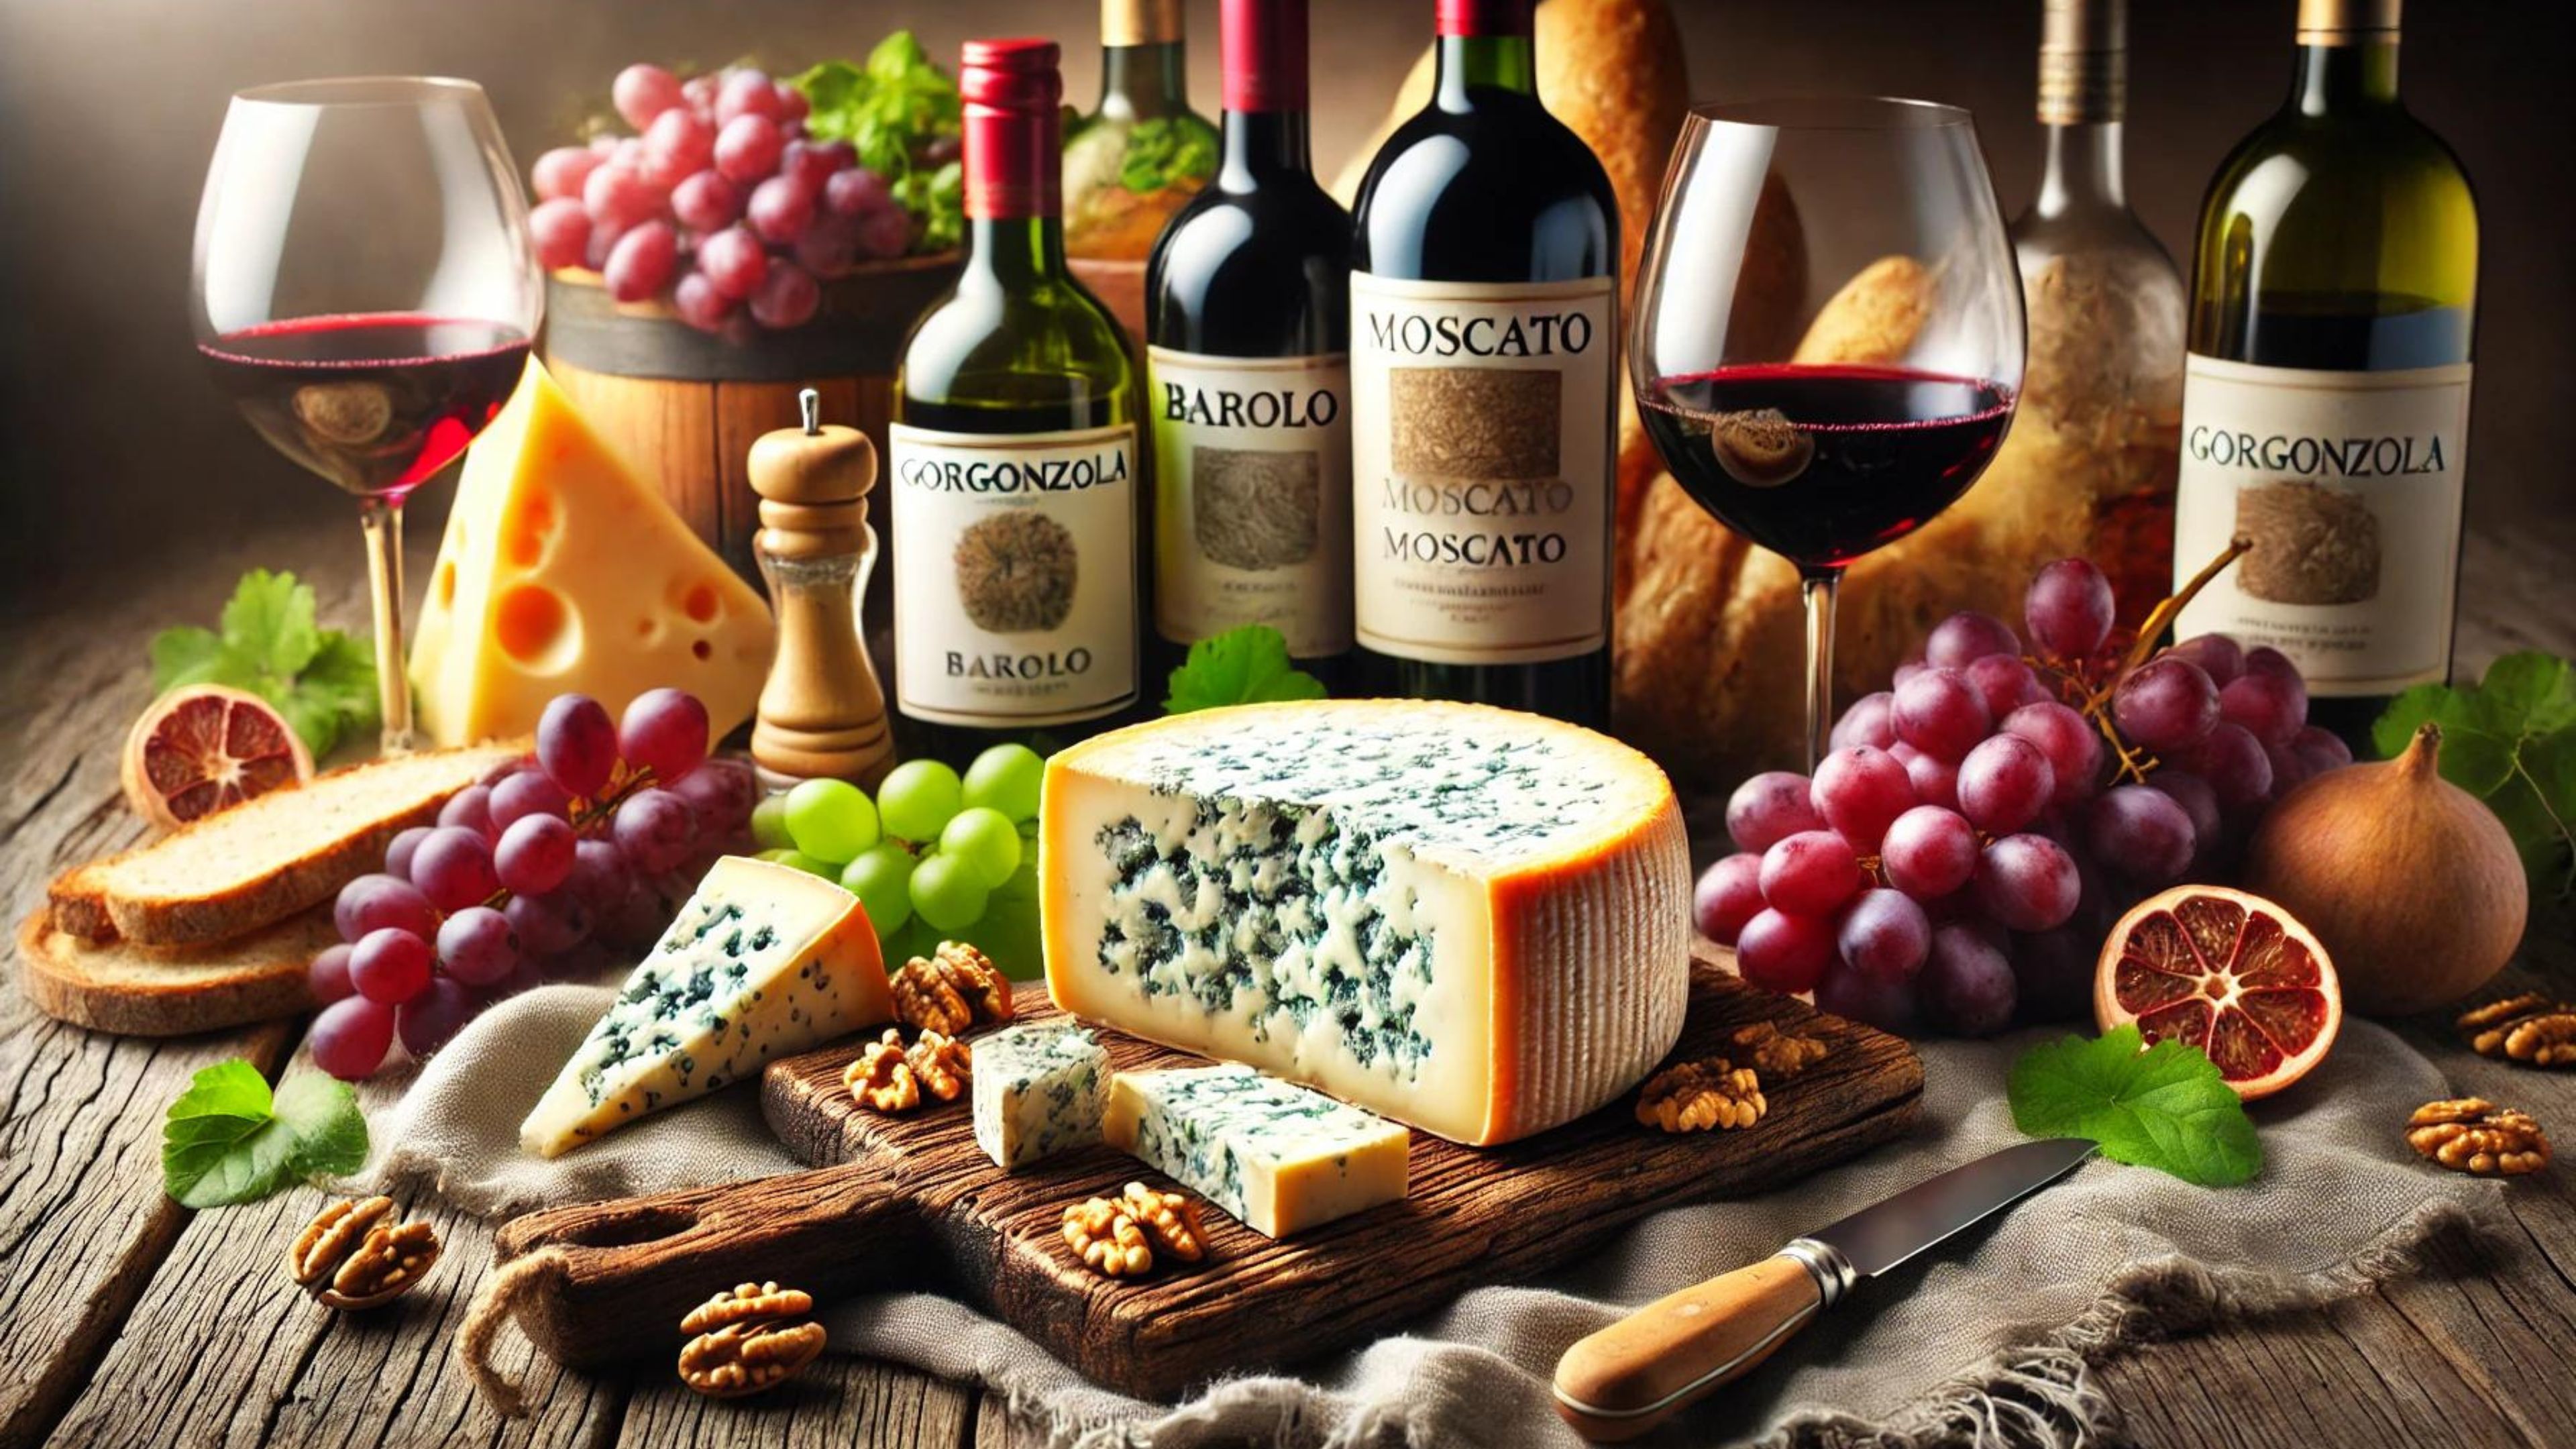 Pe urmele gorgonzolei, una dintre cele mai apreciate brânze din Italia